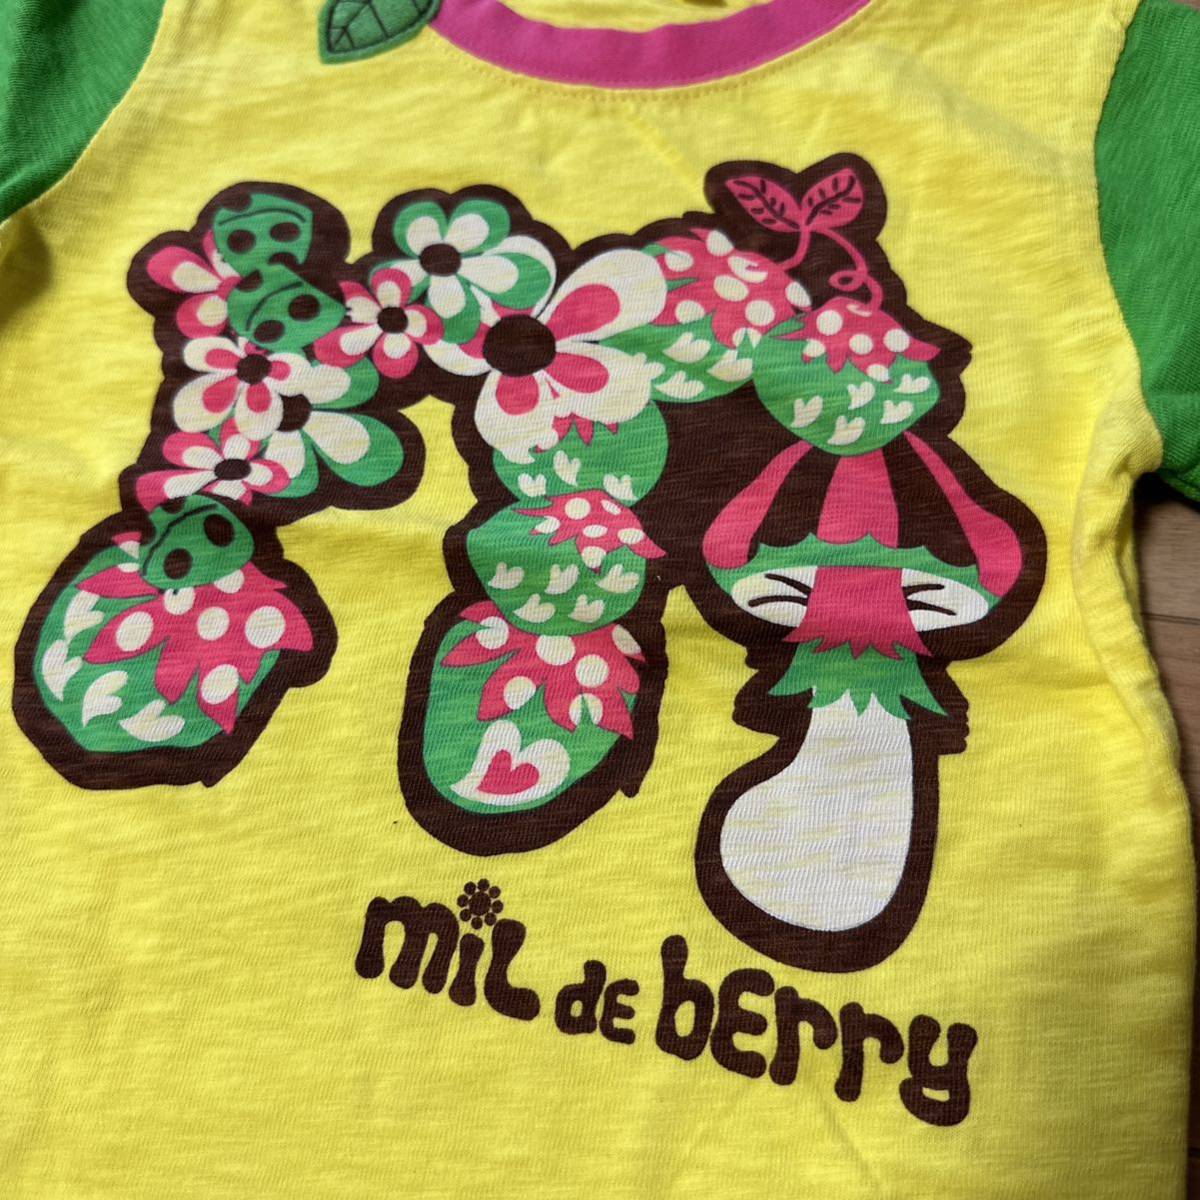  новый товар MIL DE BERRY Mill te Berry накладывающийся надеты способ футболка с длинным рукавом long T4095 иен девочка ребенок одежда Kids rio ширина гора g ковер laJAM